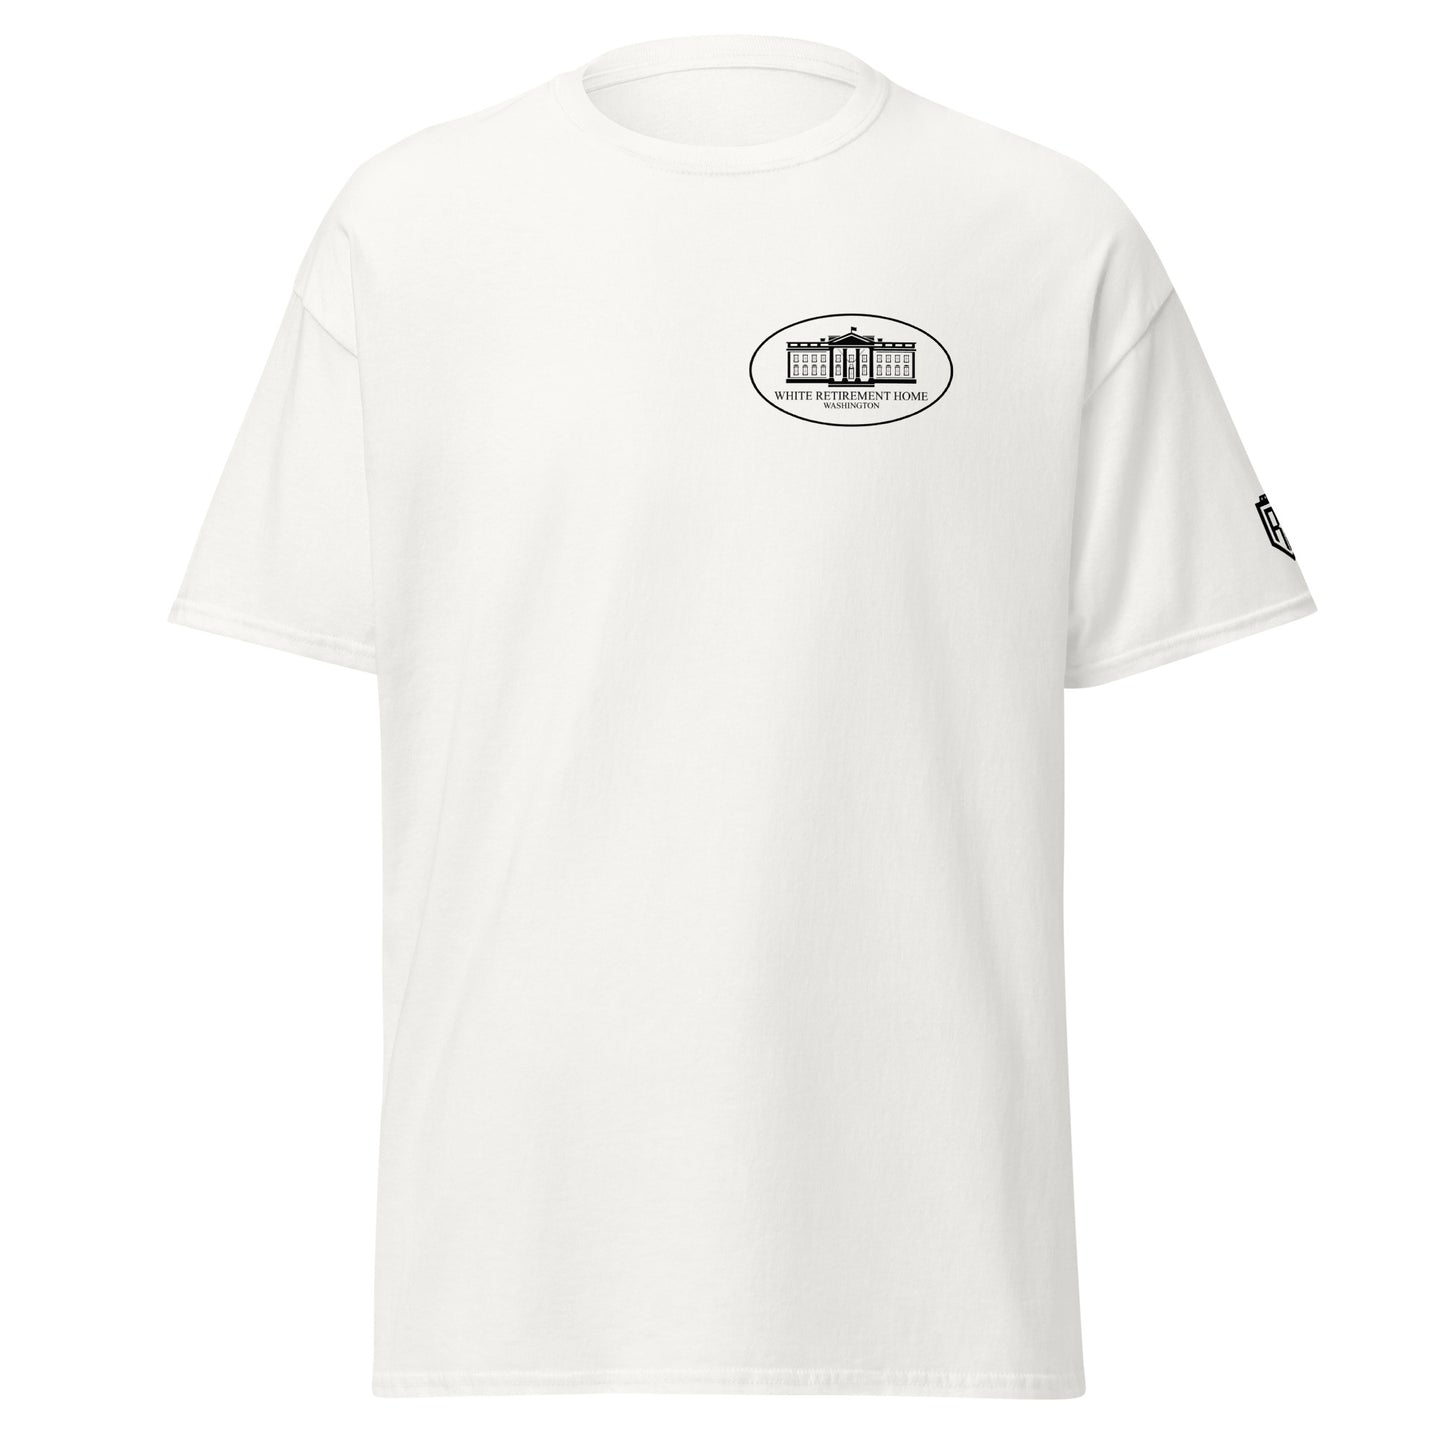 "White Retirement Home" T-Shirt